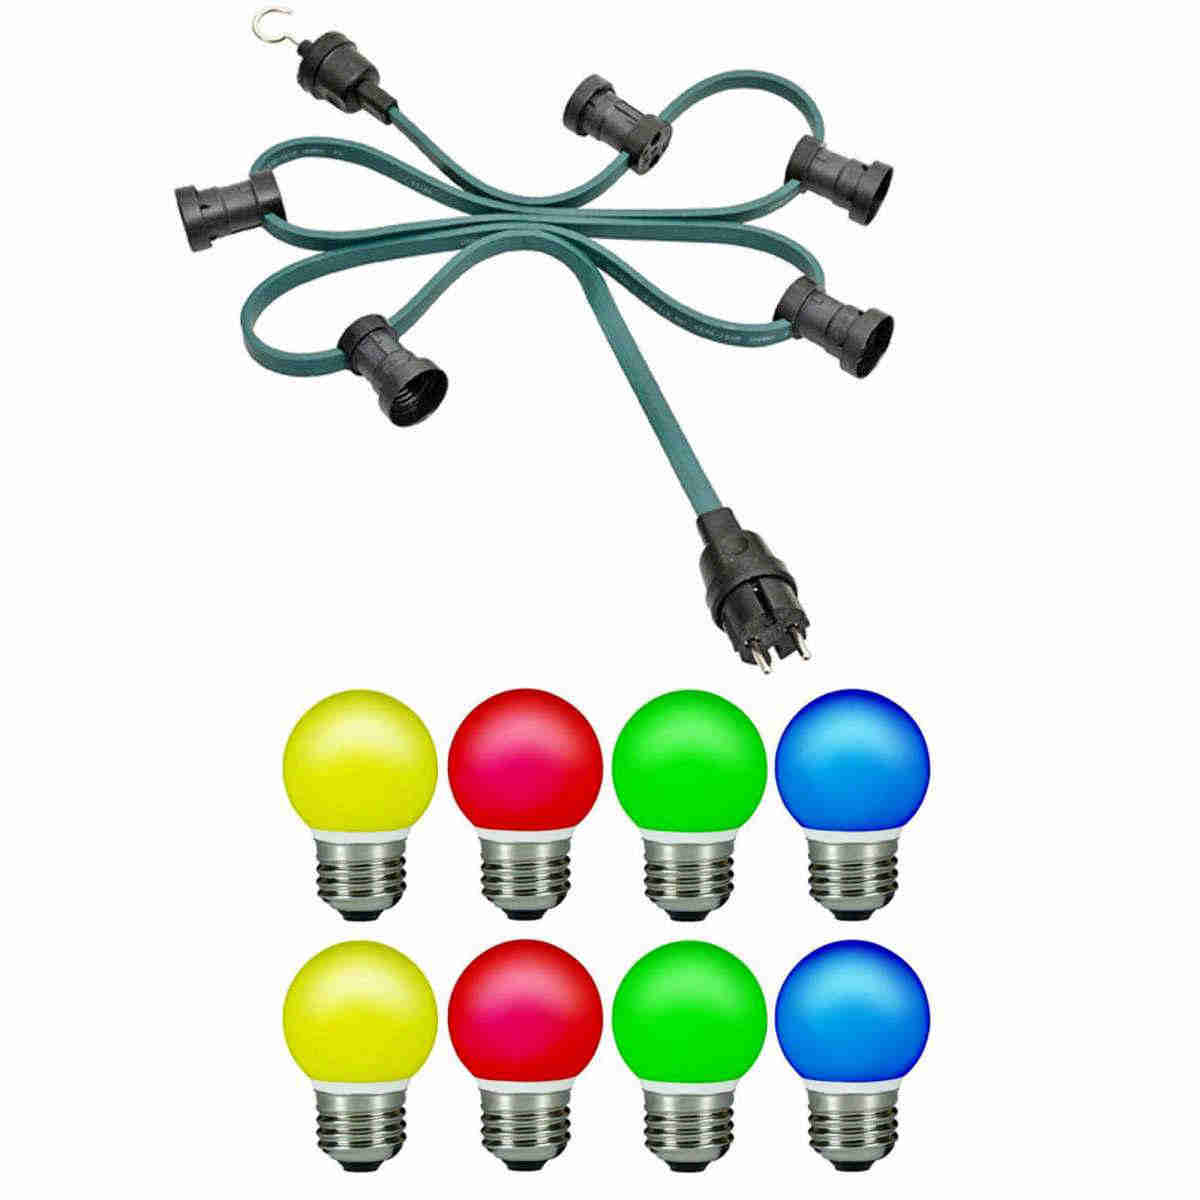 H05RNH2-F2x1,5 Illu-Lichterkette grün 10m IP44 inkl. 10x E27 Fassungen, 10x Dichtringe inkl. LED Tropfenlampen E27 rot, grün, gelb, rot, blau für innen und aussen (Kalt)